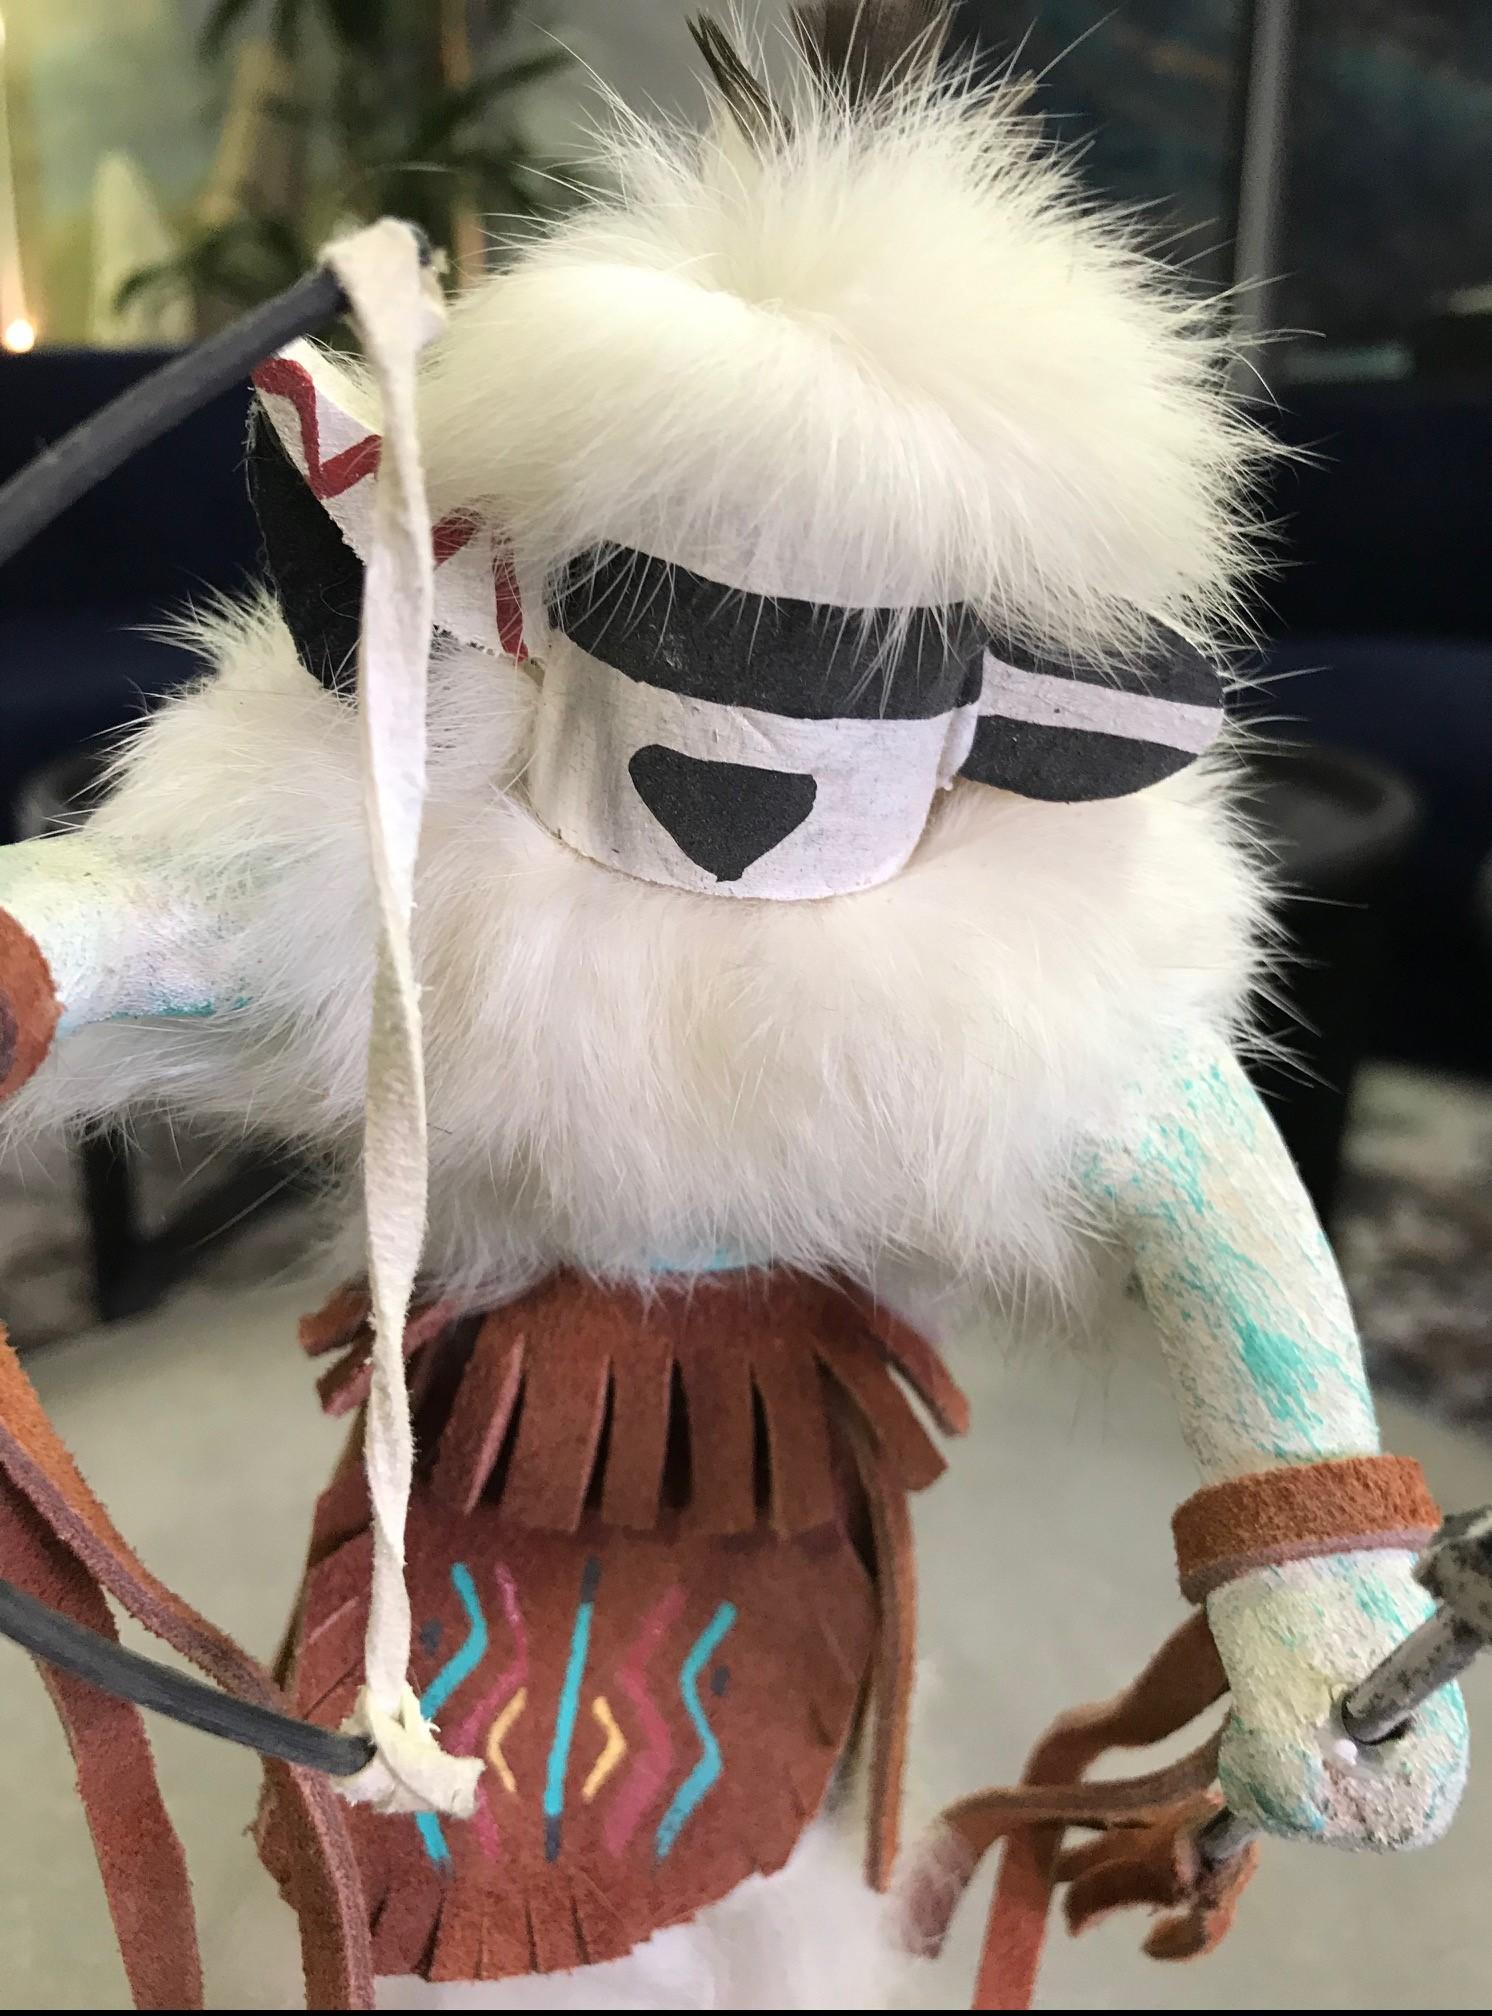 Eine wunderschön detaillierte und verzierte Kachina-Puppe mit weißem Fell.

Vom Künstler auf dem Sockel signiert.

Aus einer Sammlung von Objekten und Artefakten der amerikanischen Ureinwohner.

Abmessungen: 8